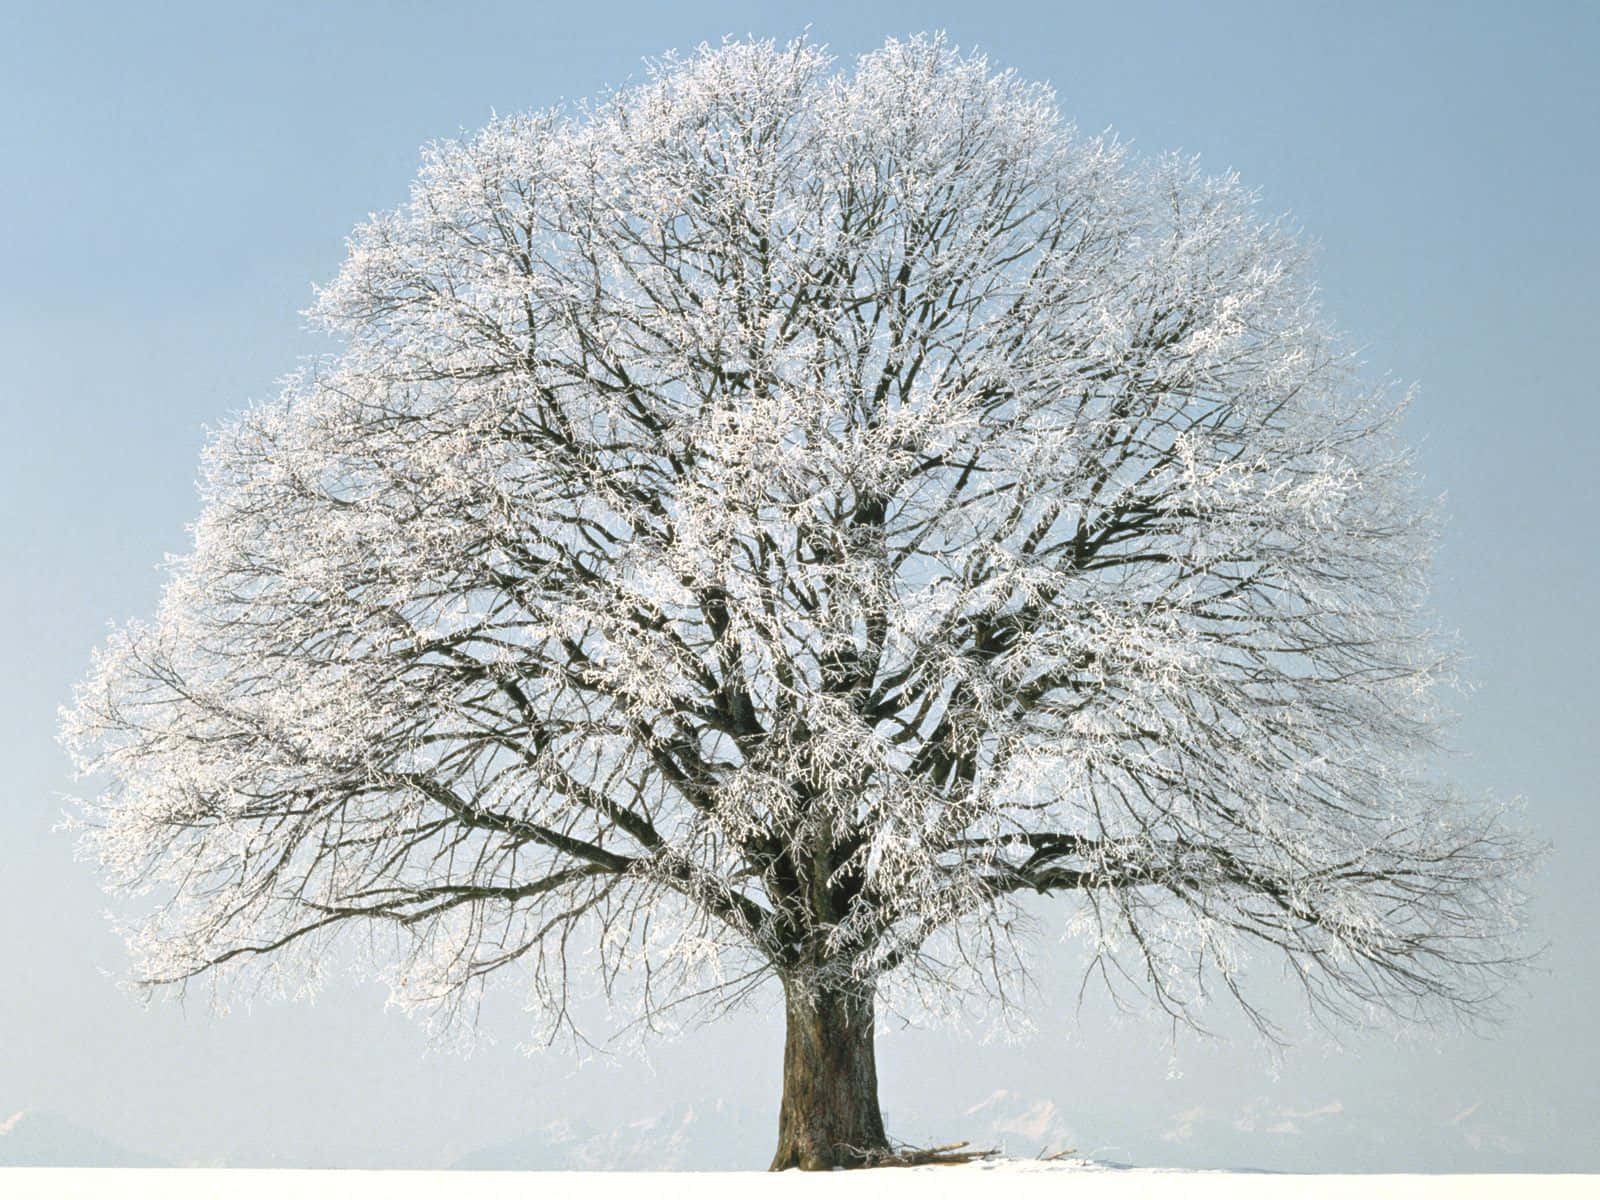 Majestic Winter Trees in a Serene Landscape Wallpaper